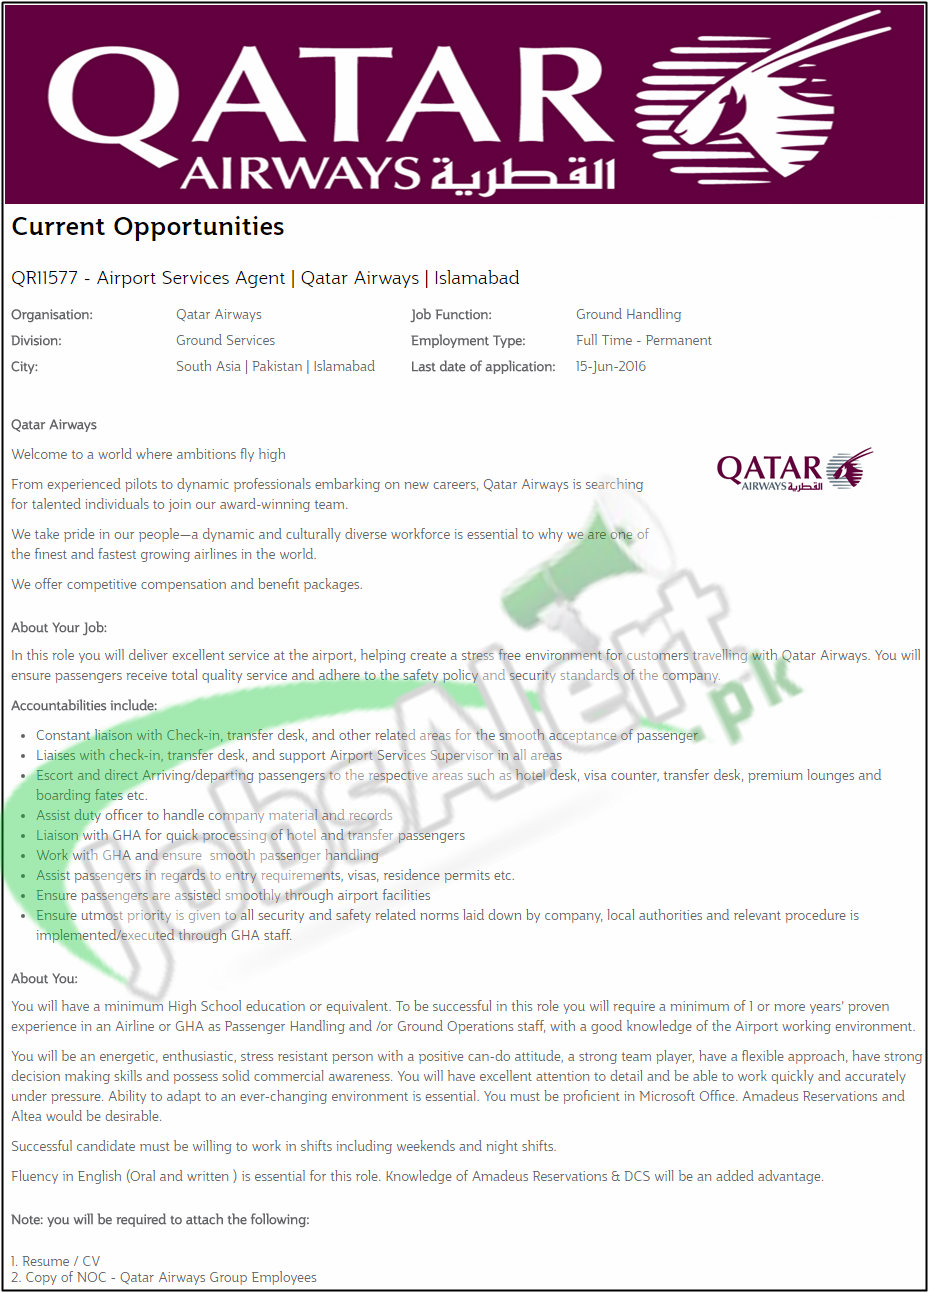 jobs in qatar airways pakistan 2016 apply online latest